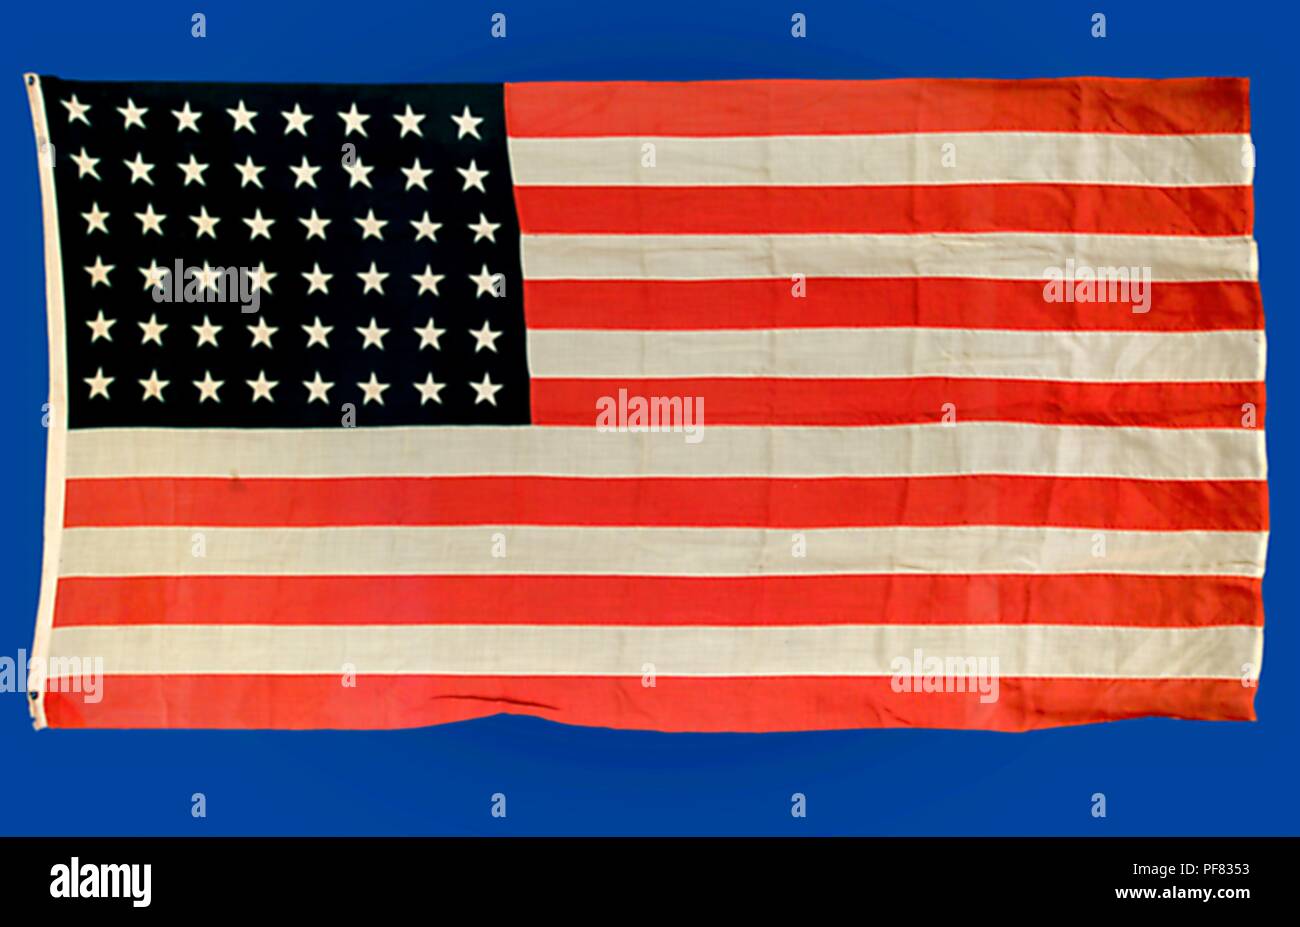 La prima bandiera americana sia stata sorvolare i centri per il controllo delle malattie (CDC) sede nel centro di Atlanta, Georgia, 2004. Immagine cortesia centri per il controllo delle malattie / Judy Gantt / Salute Globale Odyssey. () Foto Stock